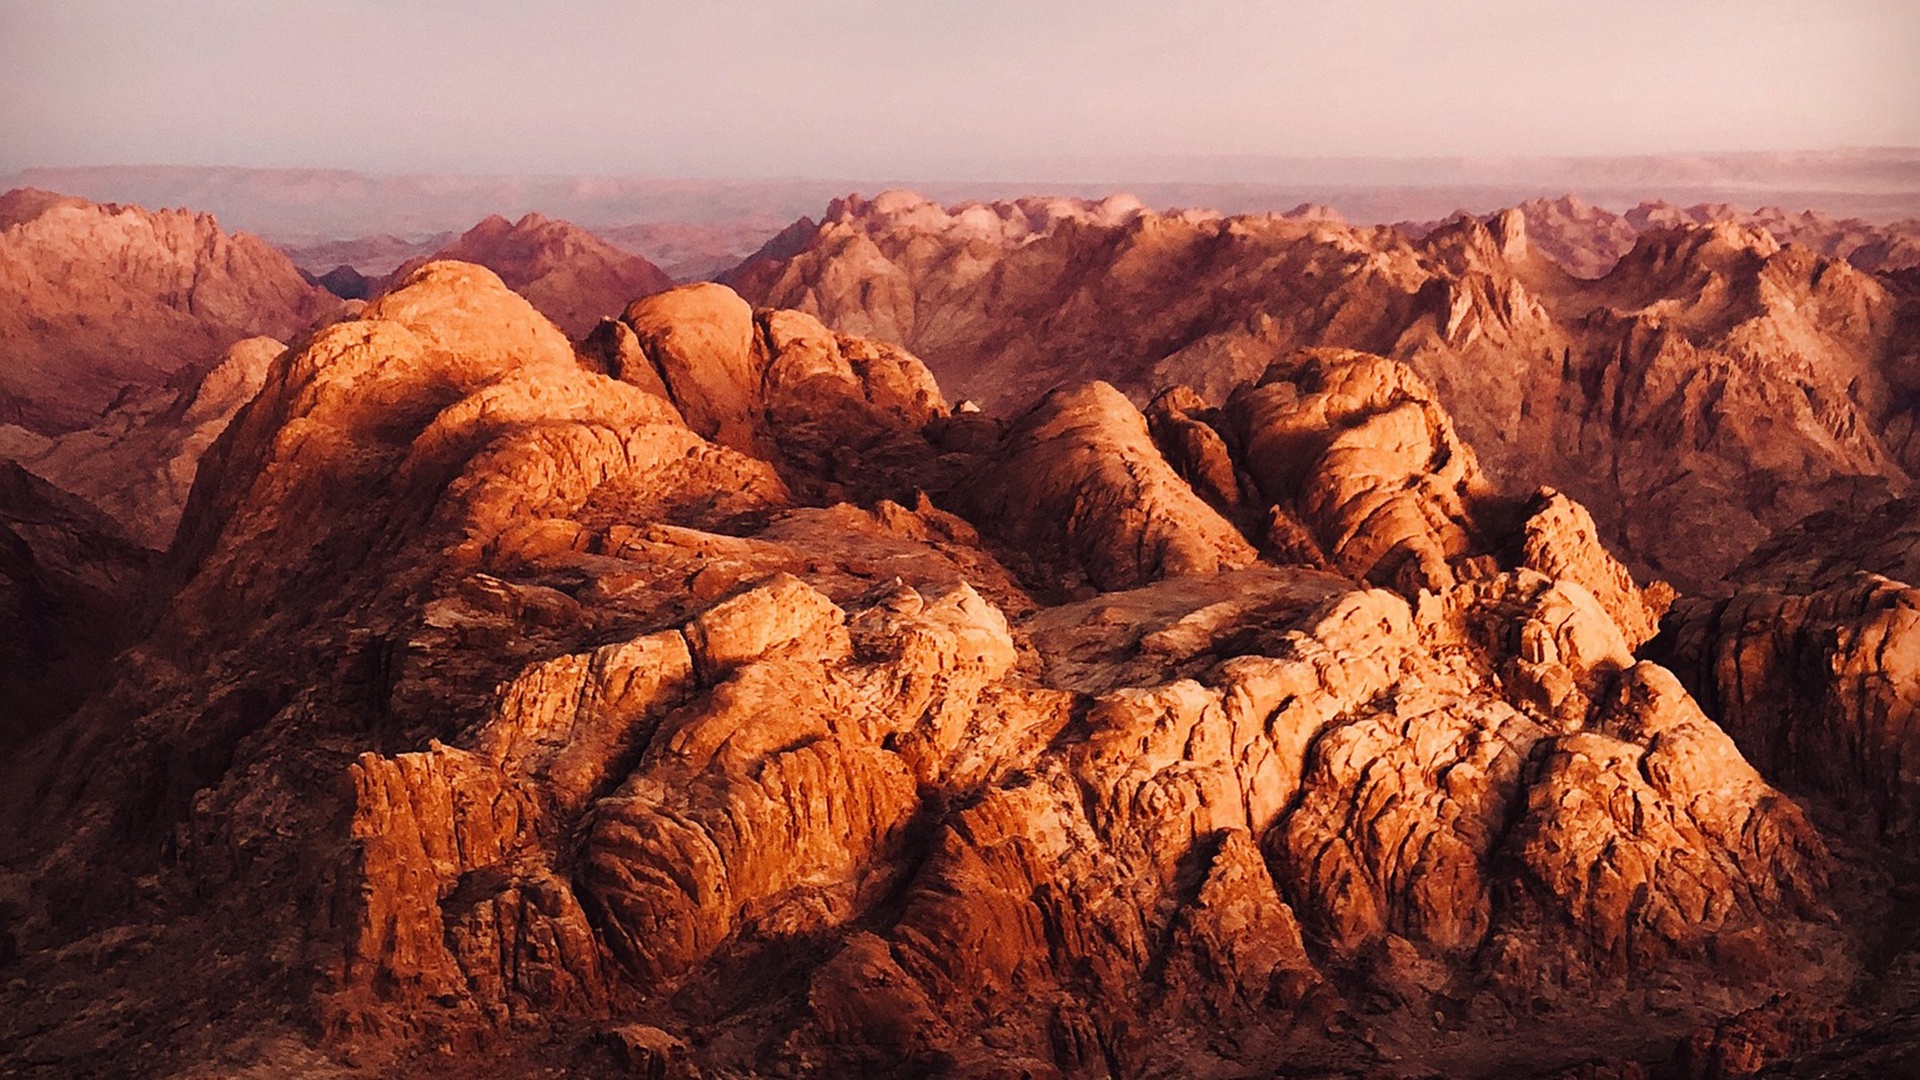 Berg Sinai in rötlichem Licht